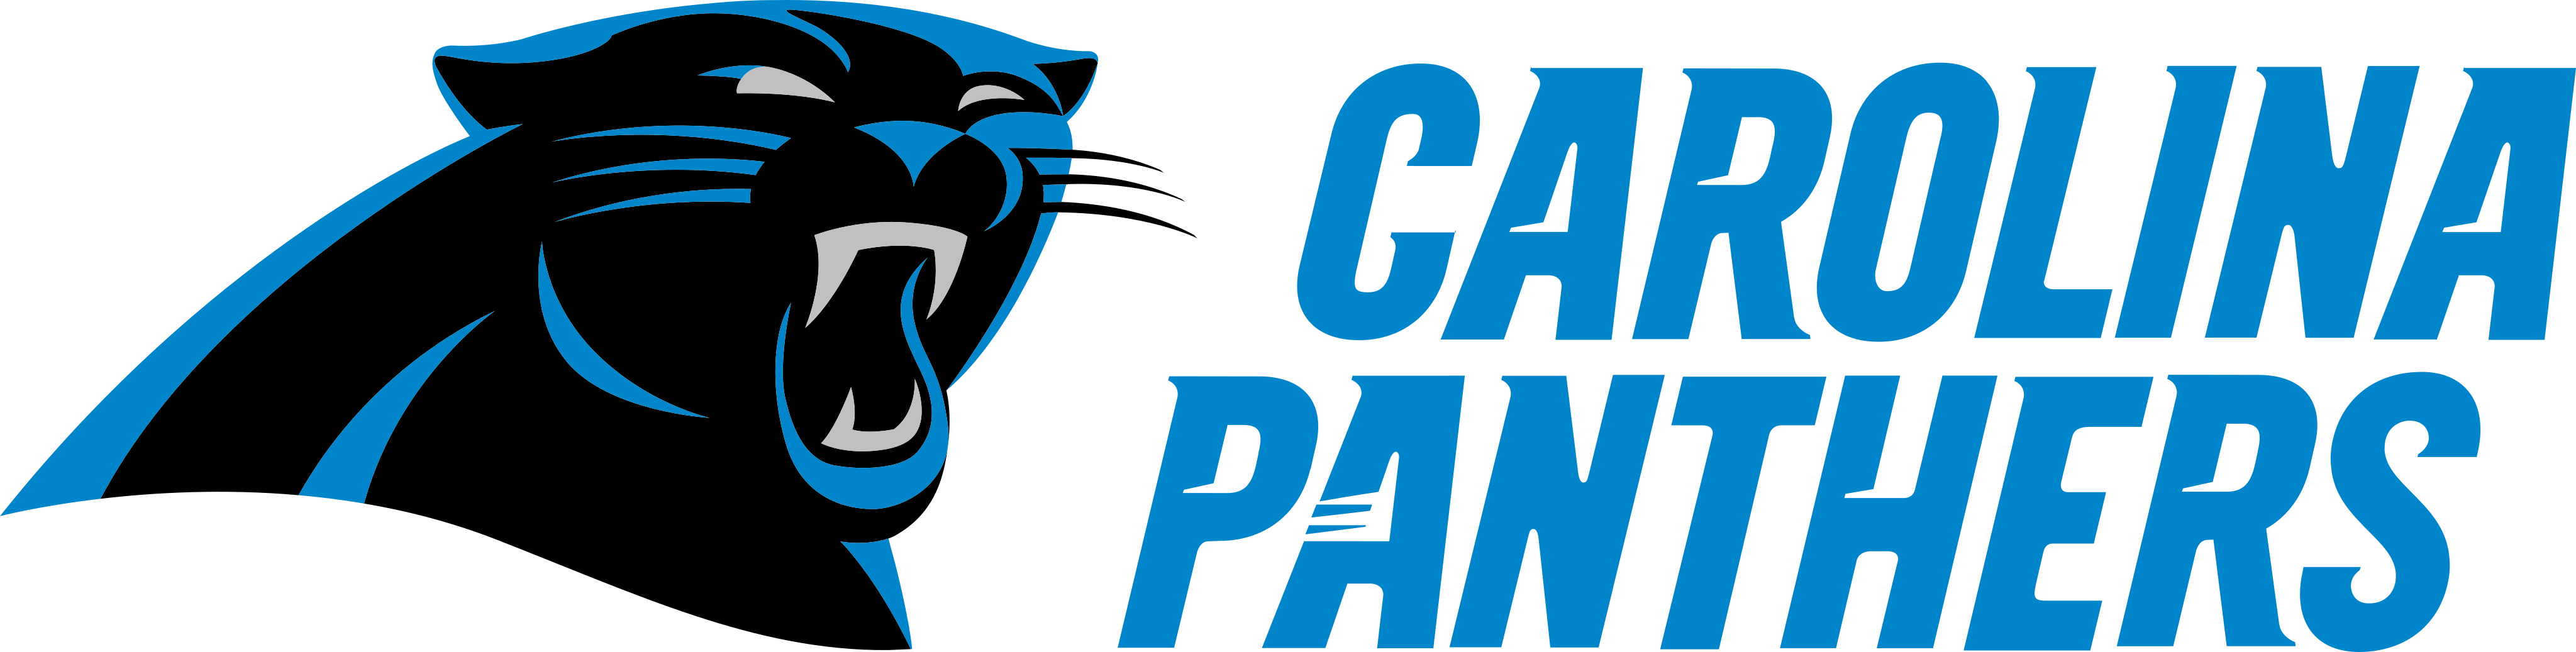 Carolina Panthers Logo PNG Photos